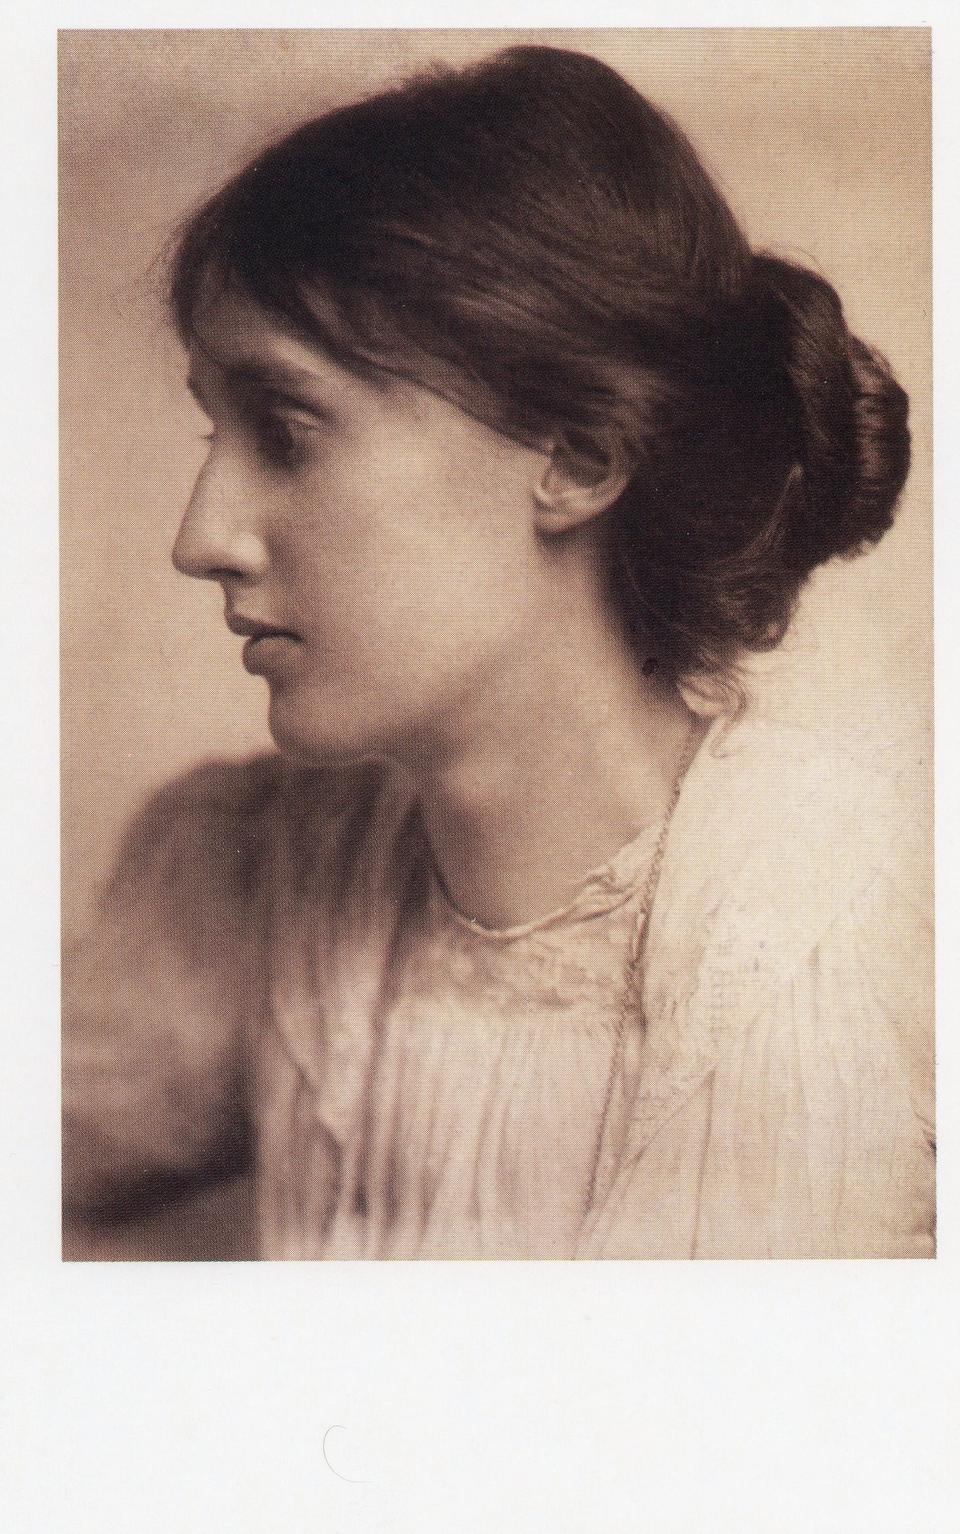 Portrait de Virginia Woolf